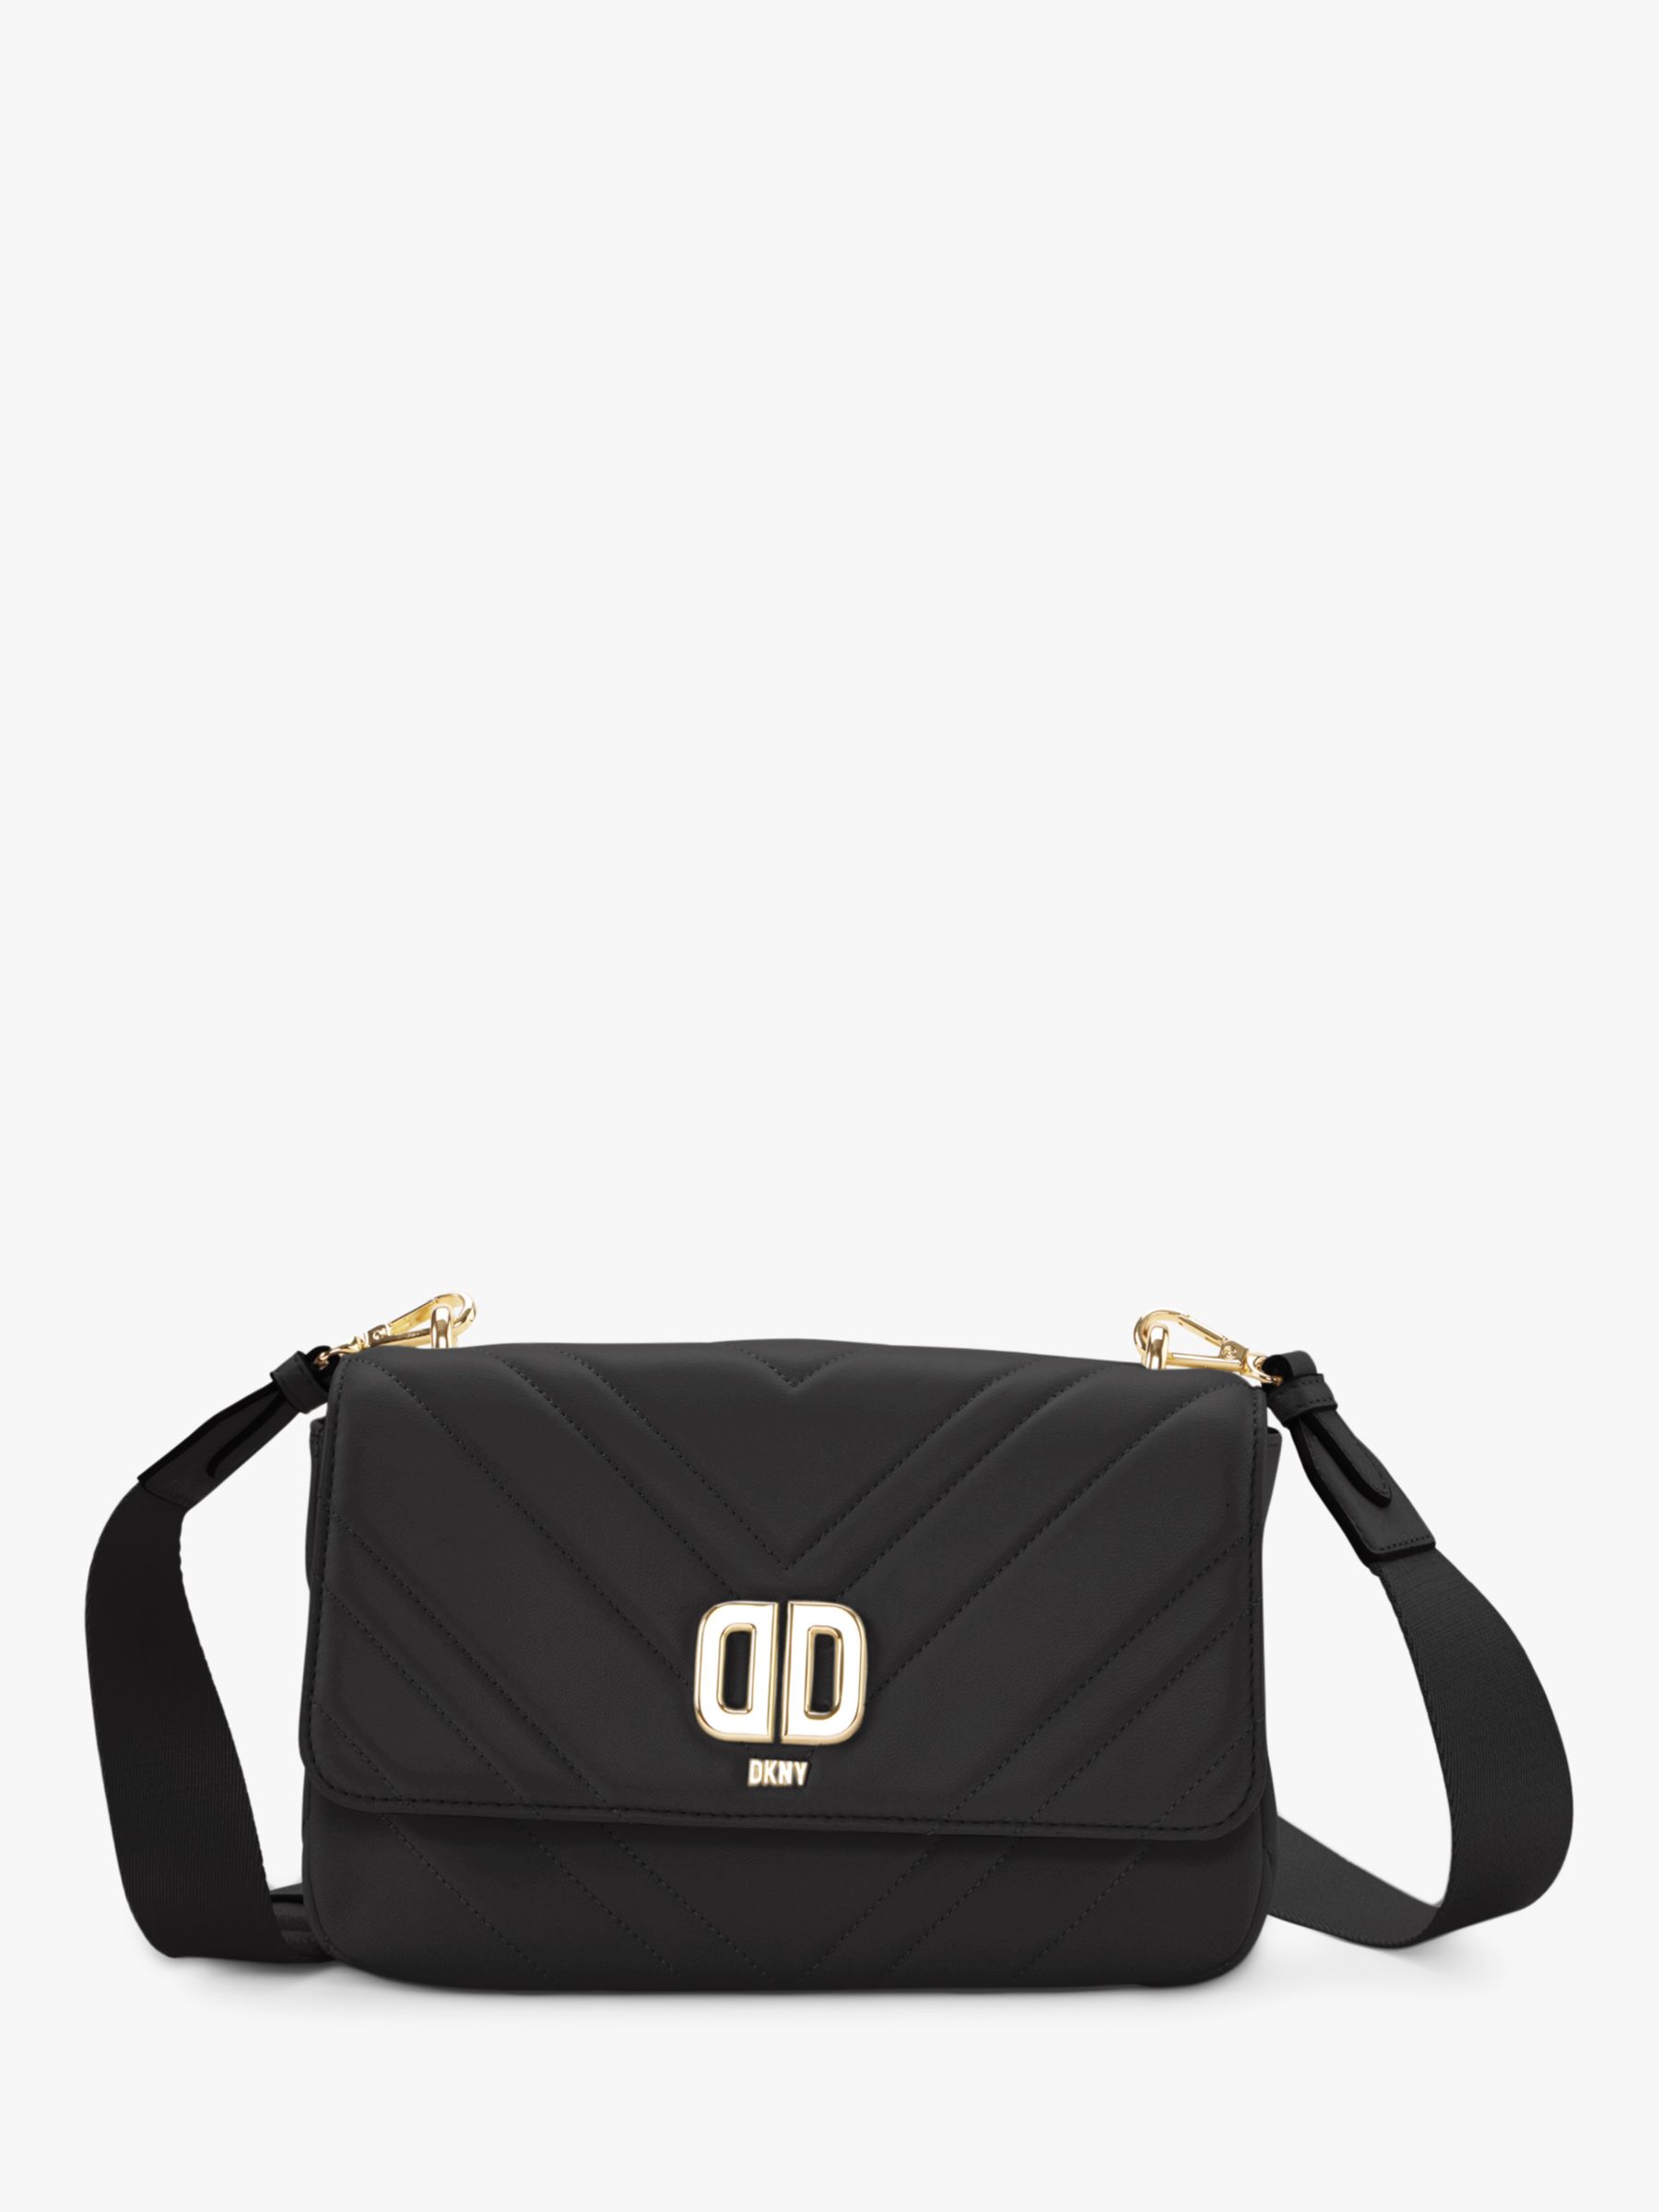 DKNY Delphine Leather Shoulder Bag